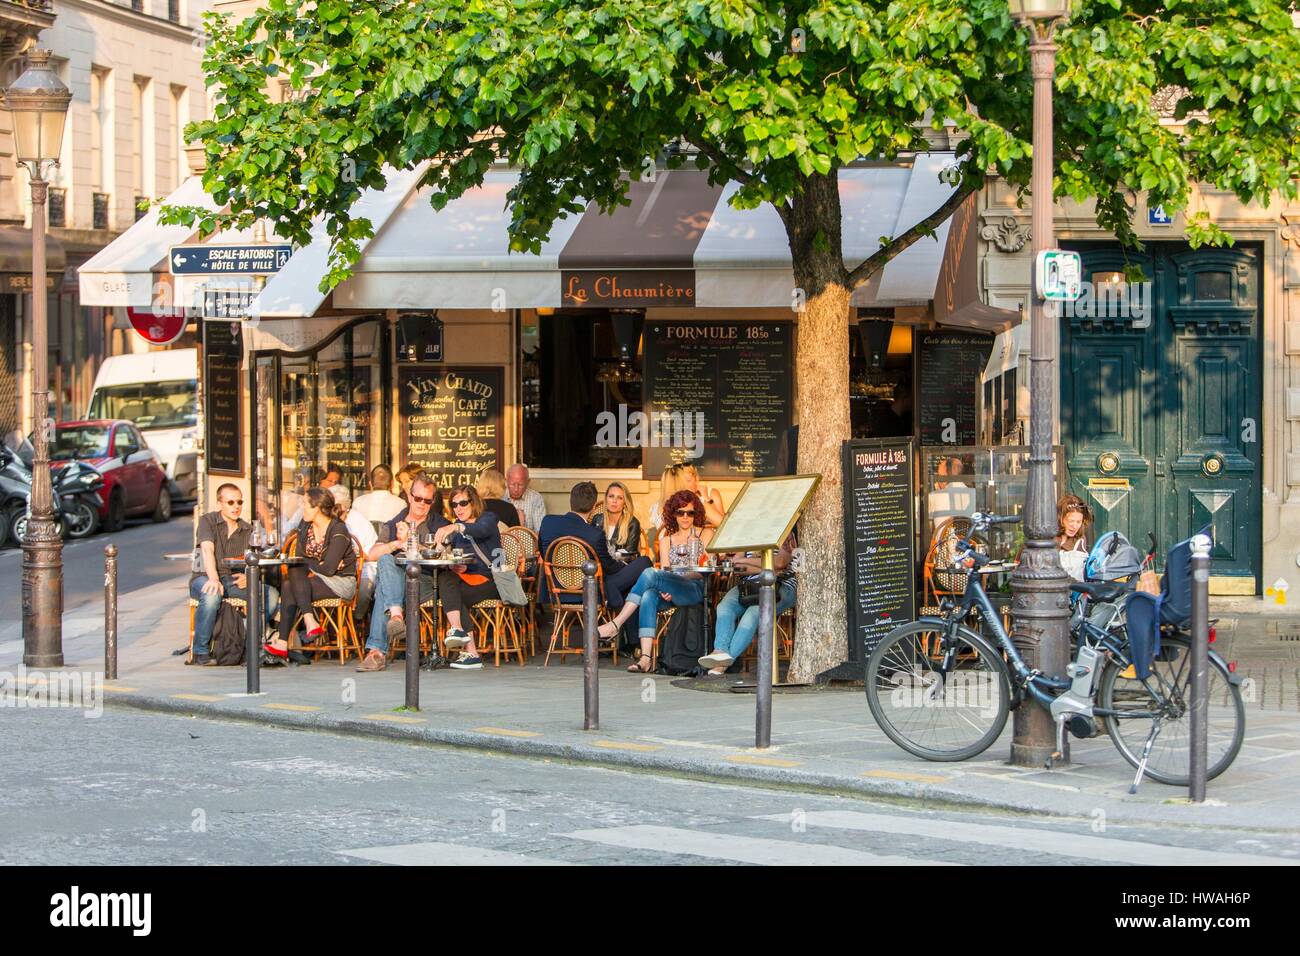 France, Paris, the Ile Saint Louis, La Chaumiere restaurant Stock Photo